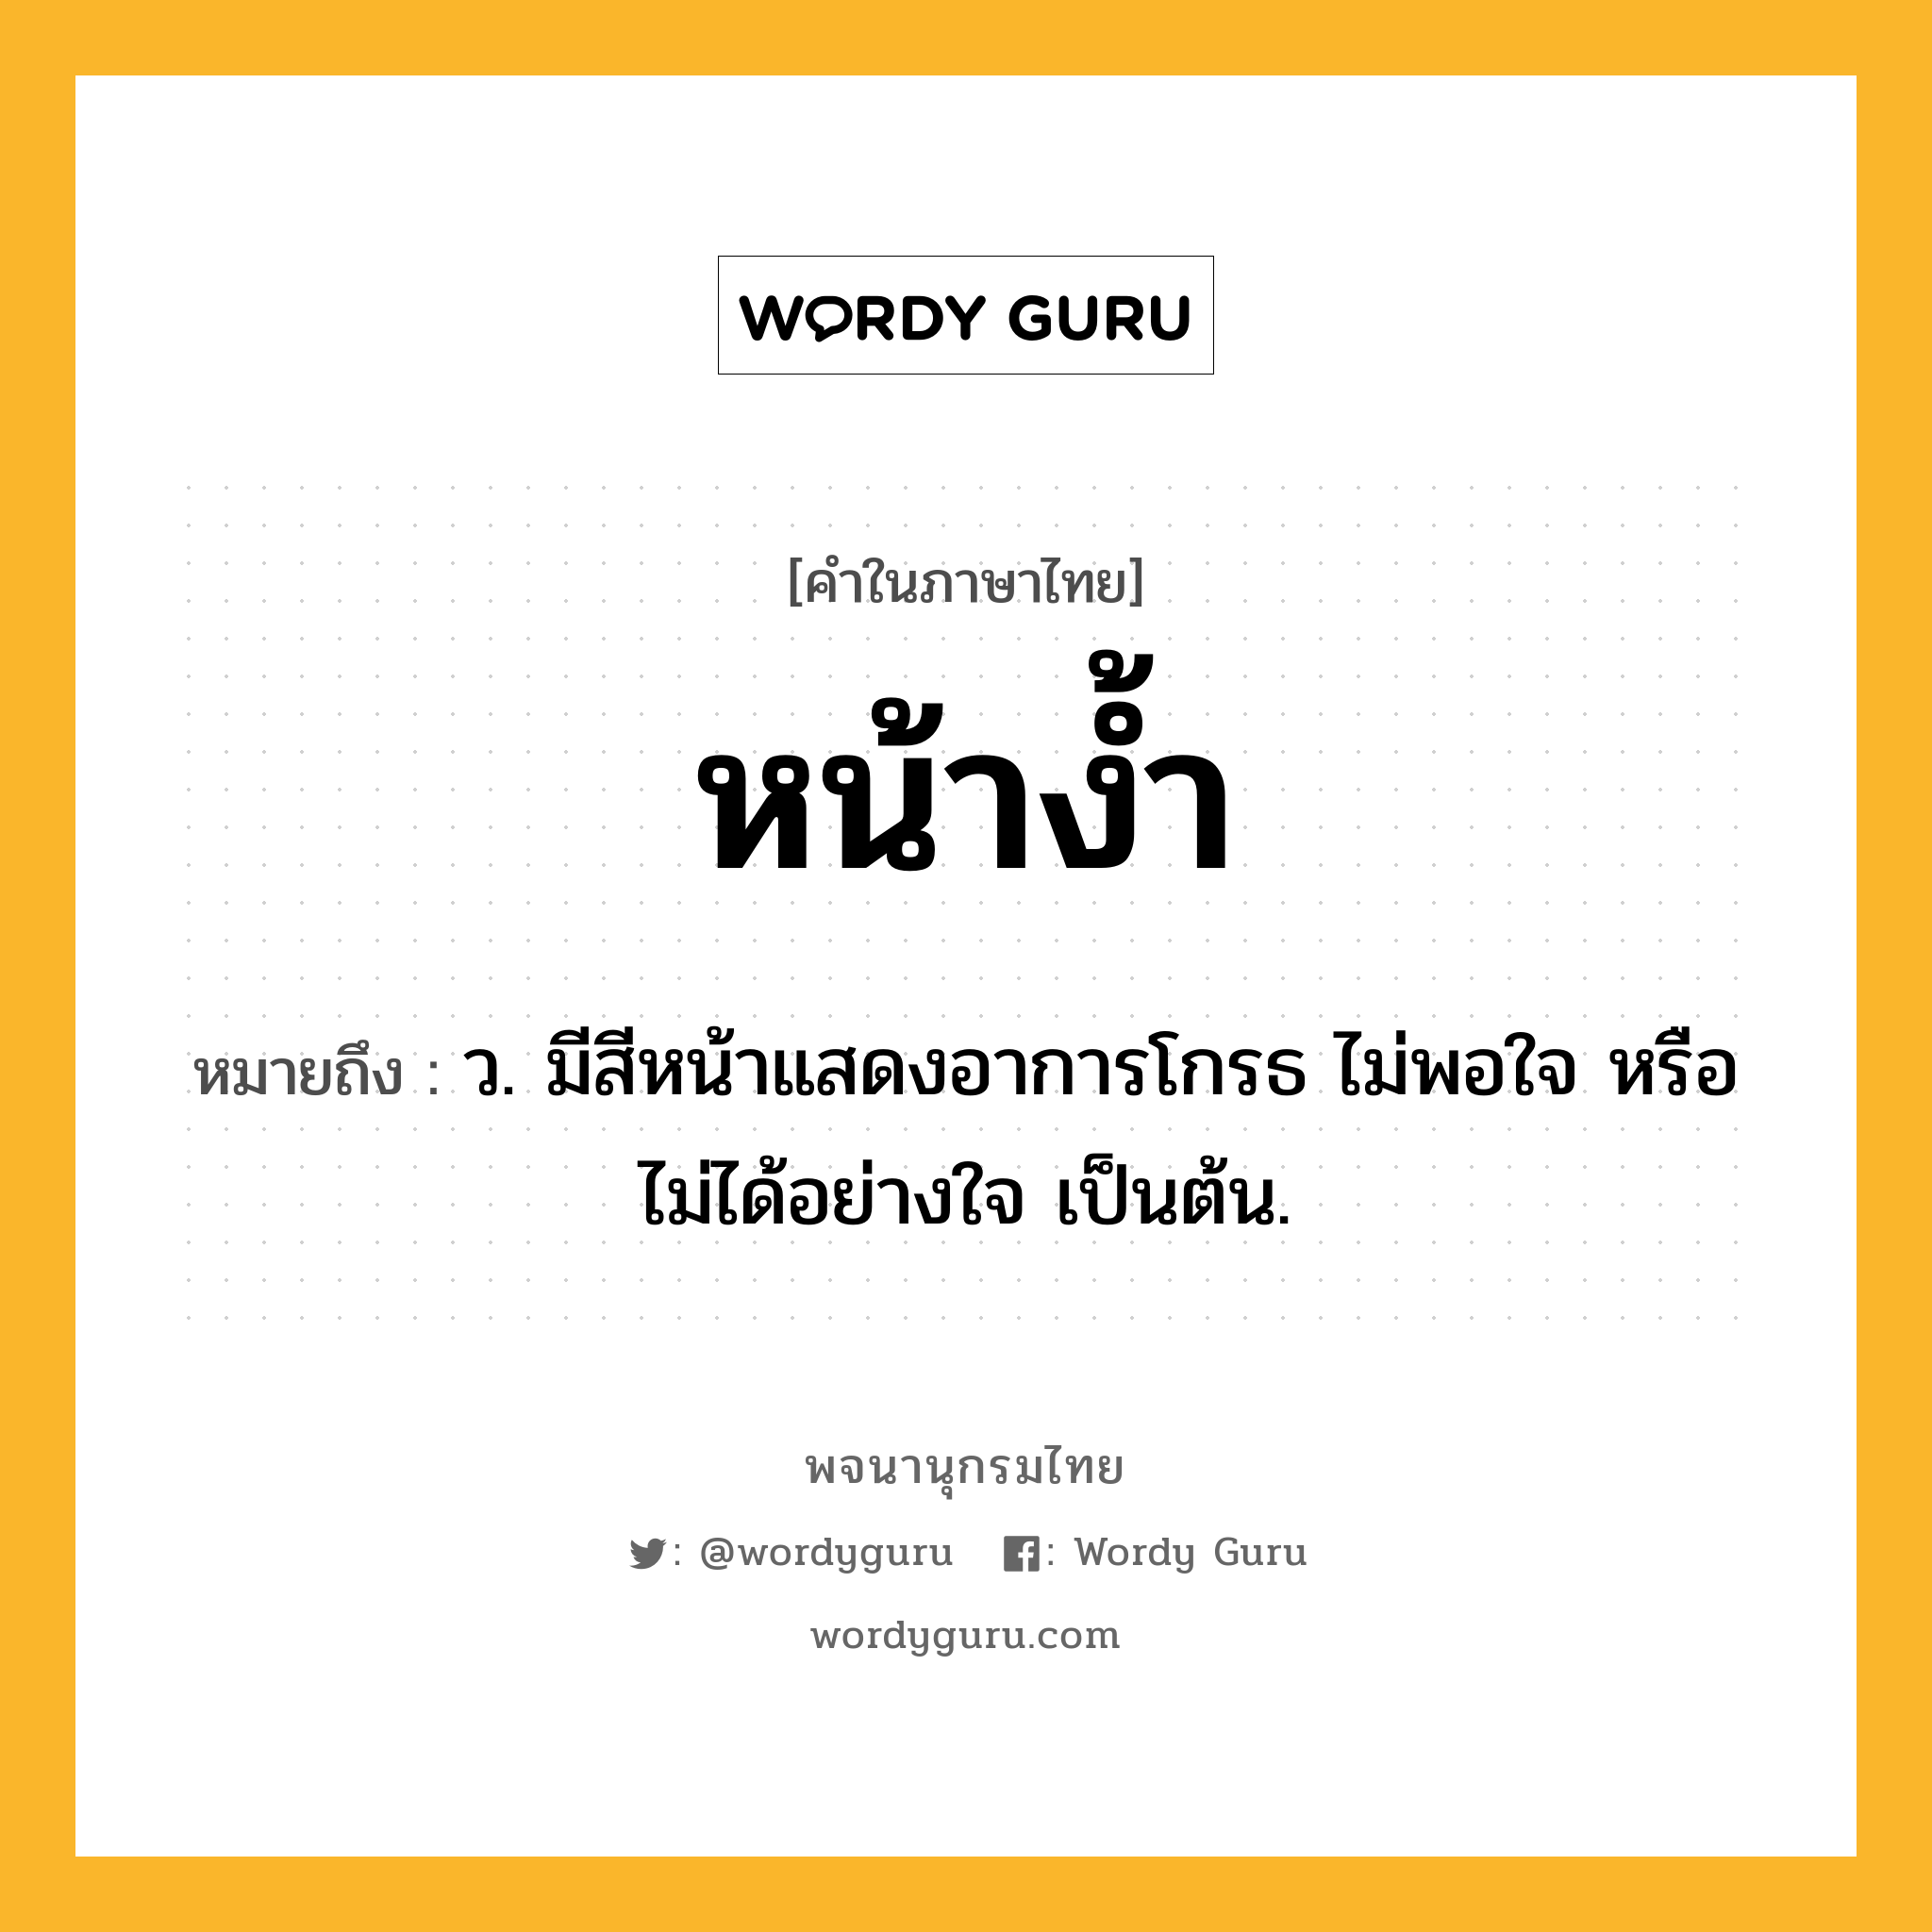 หน้าง้ำ หมายถึงอะไร?, คำในภาษาไทย หน้าง้ำ หมายถึง ว. มีสีหน้าแสดงอาการโกรธ ไม่พอใจ หรือไม่ได้อย่างใจ เป็นต้น.